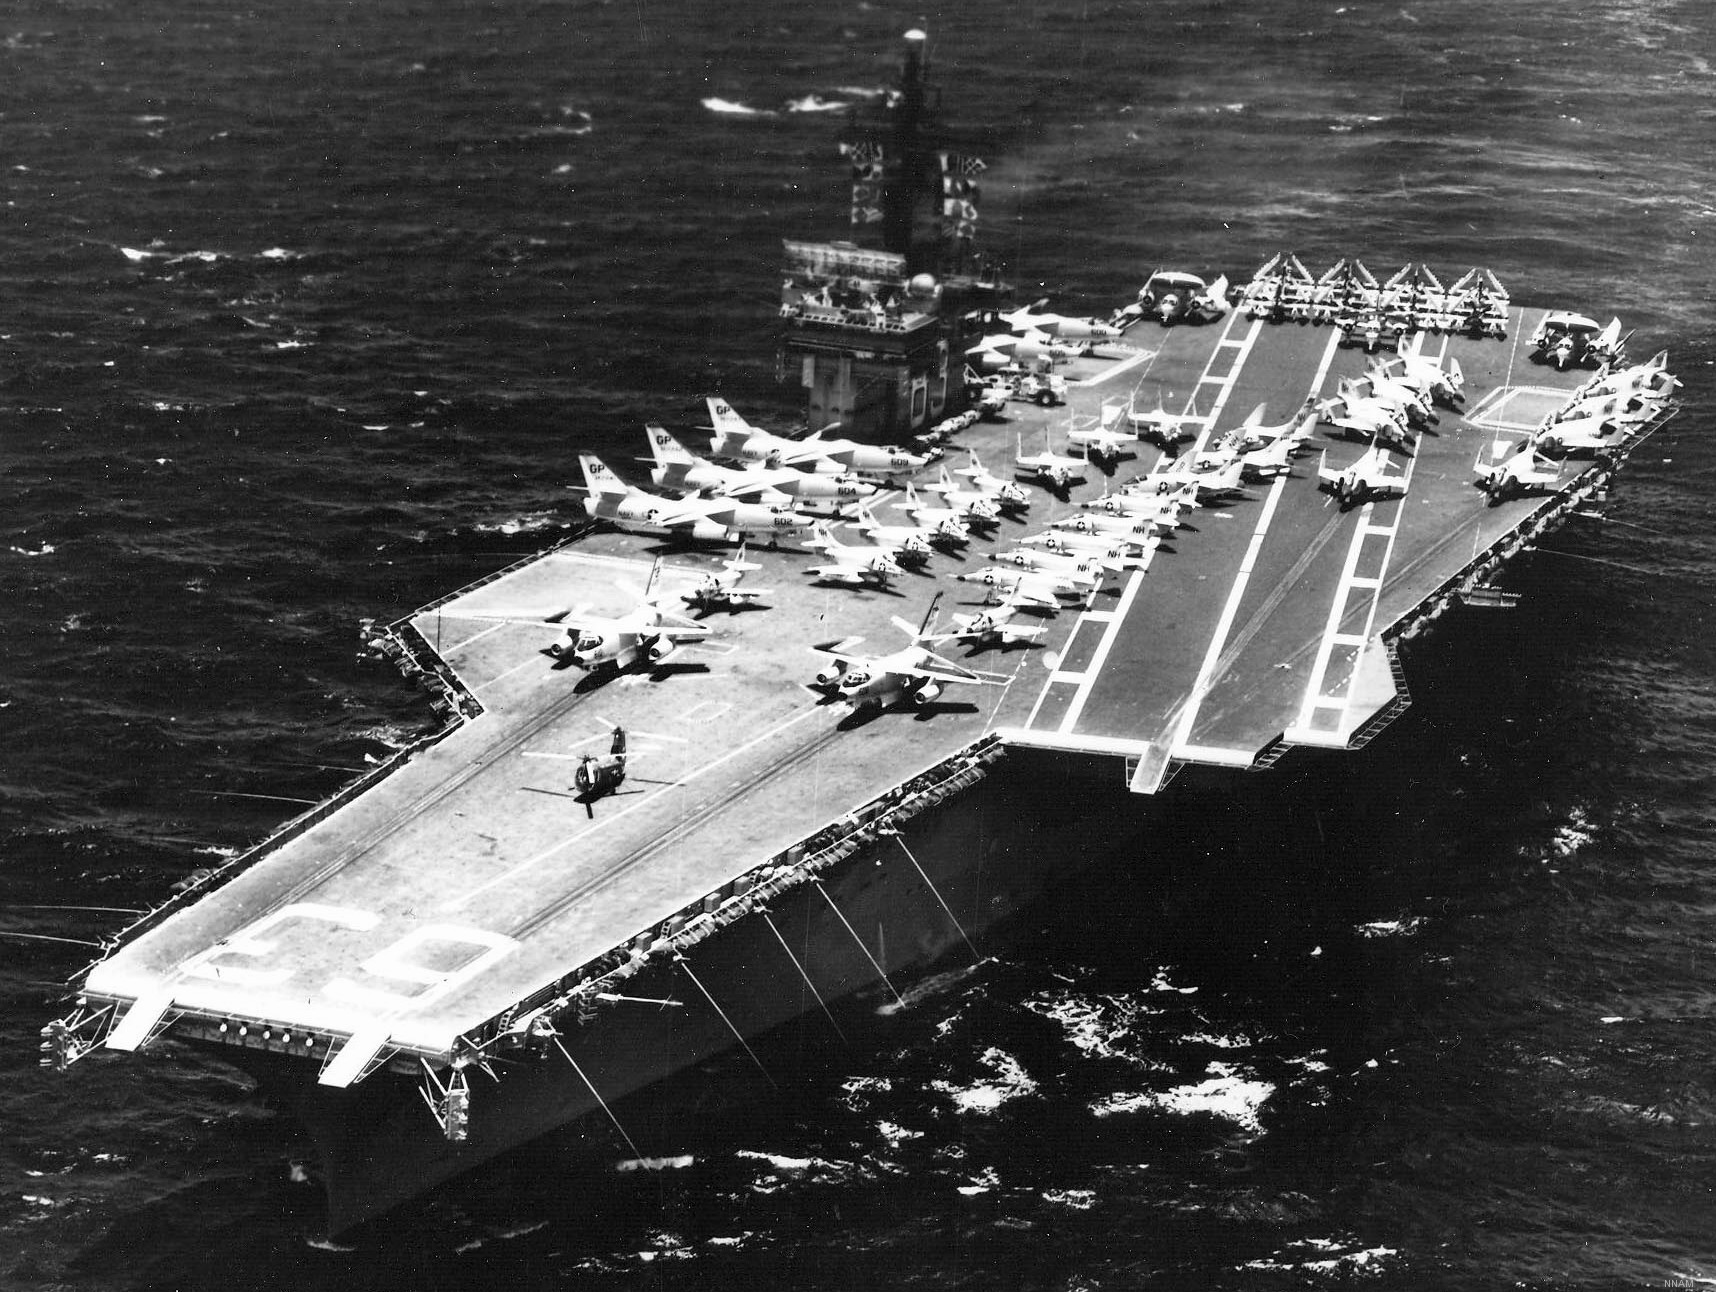 cva-63 uss kitty hawk aircraft carrier air group cvg-11 us navy 275